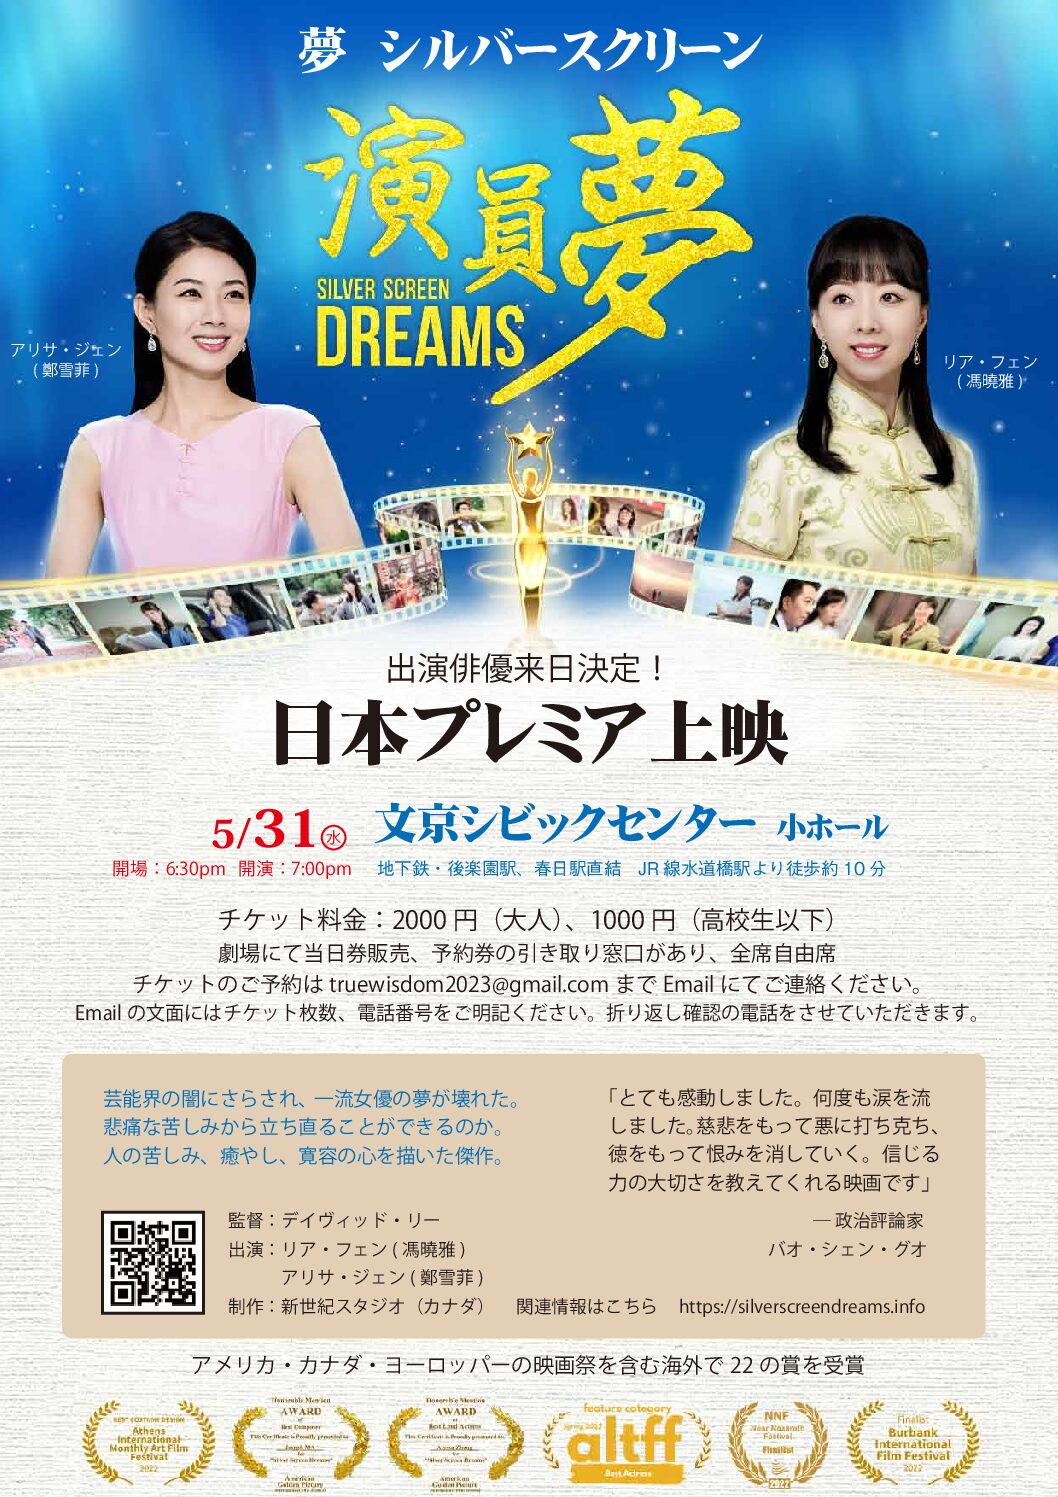 国際映画祭受賞作品『夢 シルバースクリーン』 日本プレミア上映